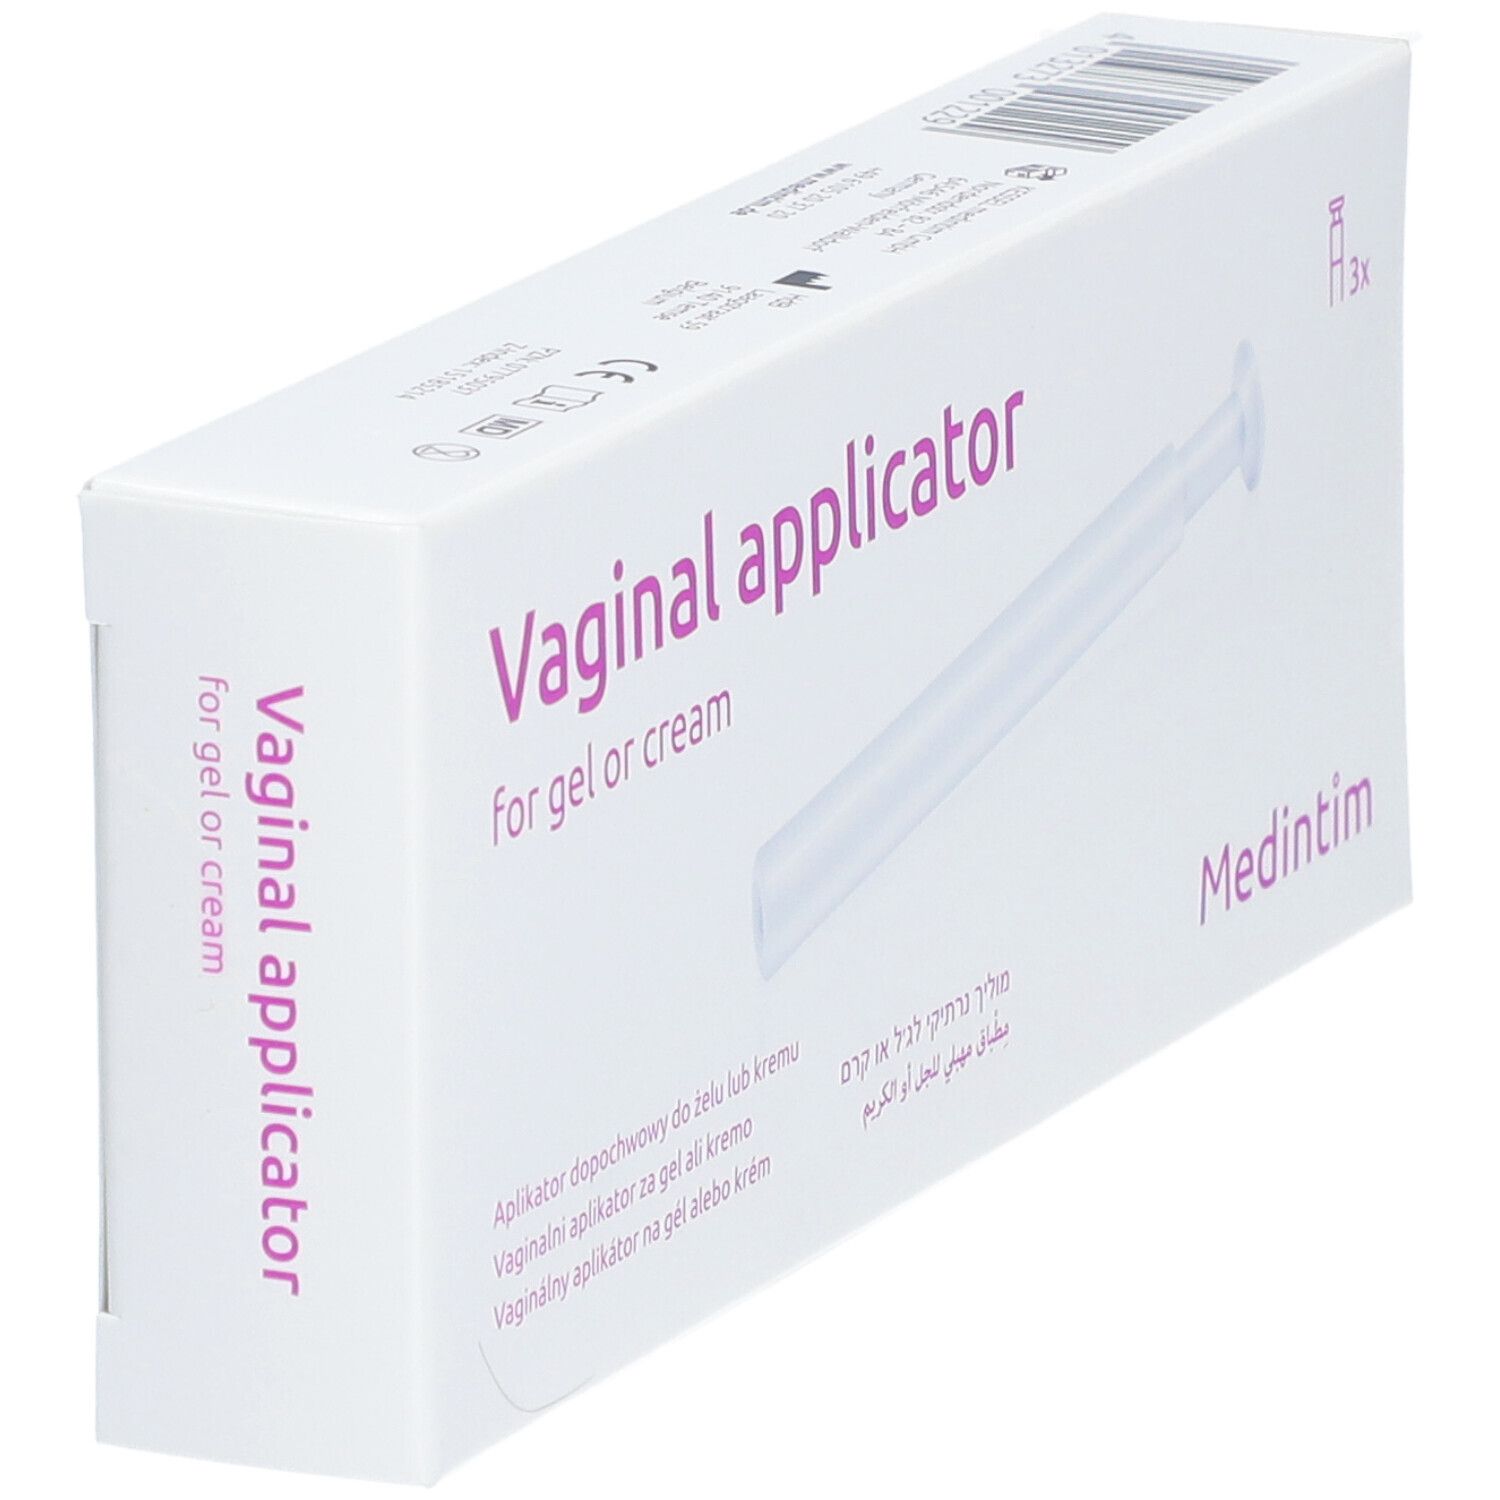 Vaginal Applikator für Gel und Crème